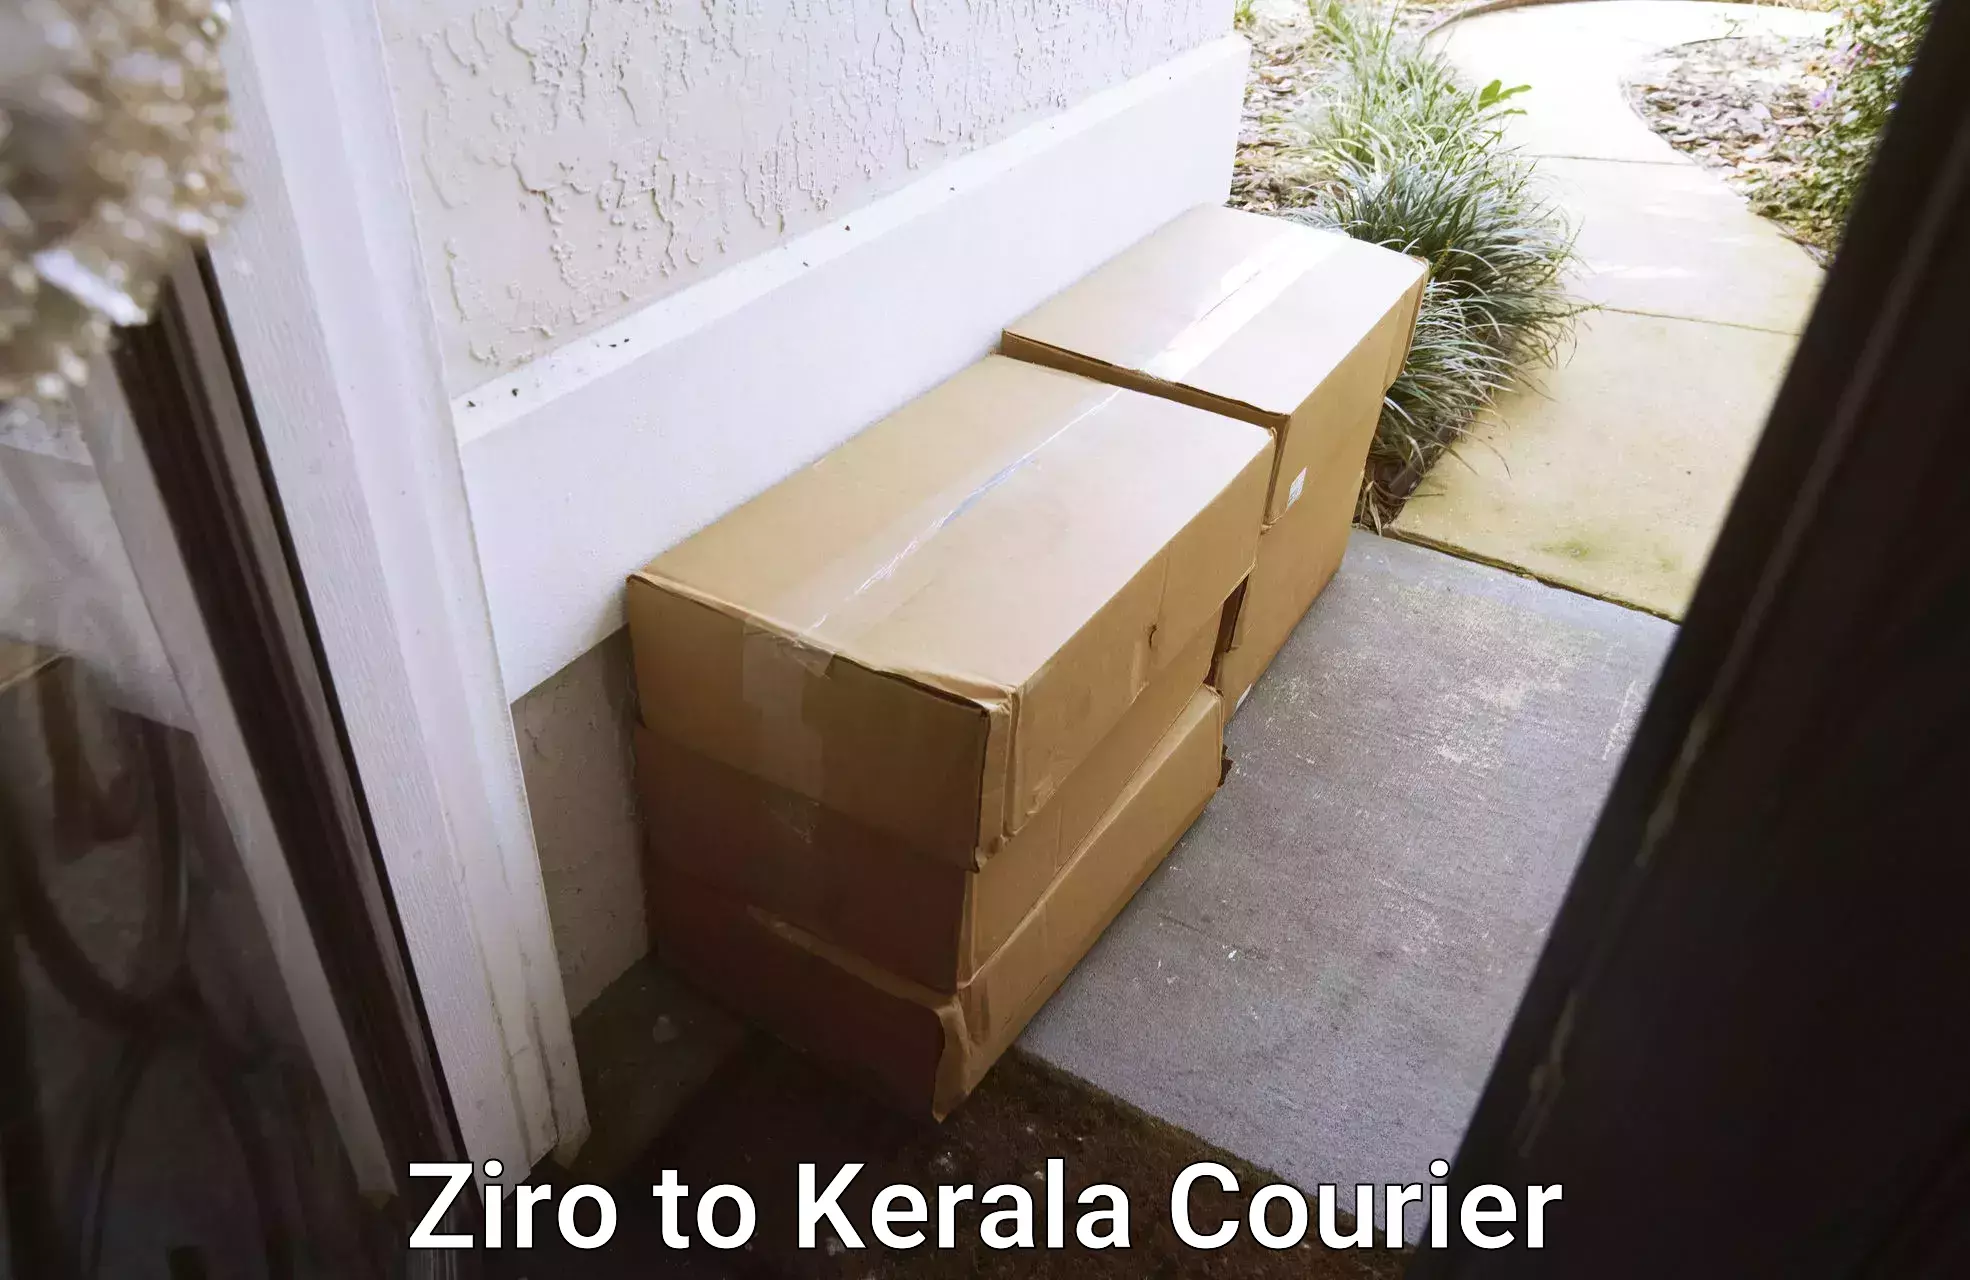 Quality courier partnerships Ziro to Kerala